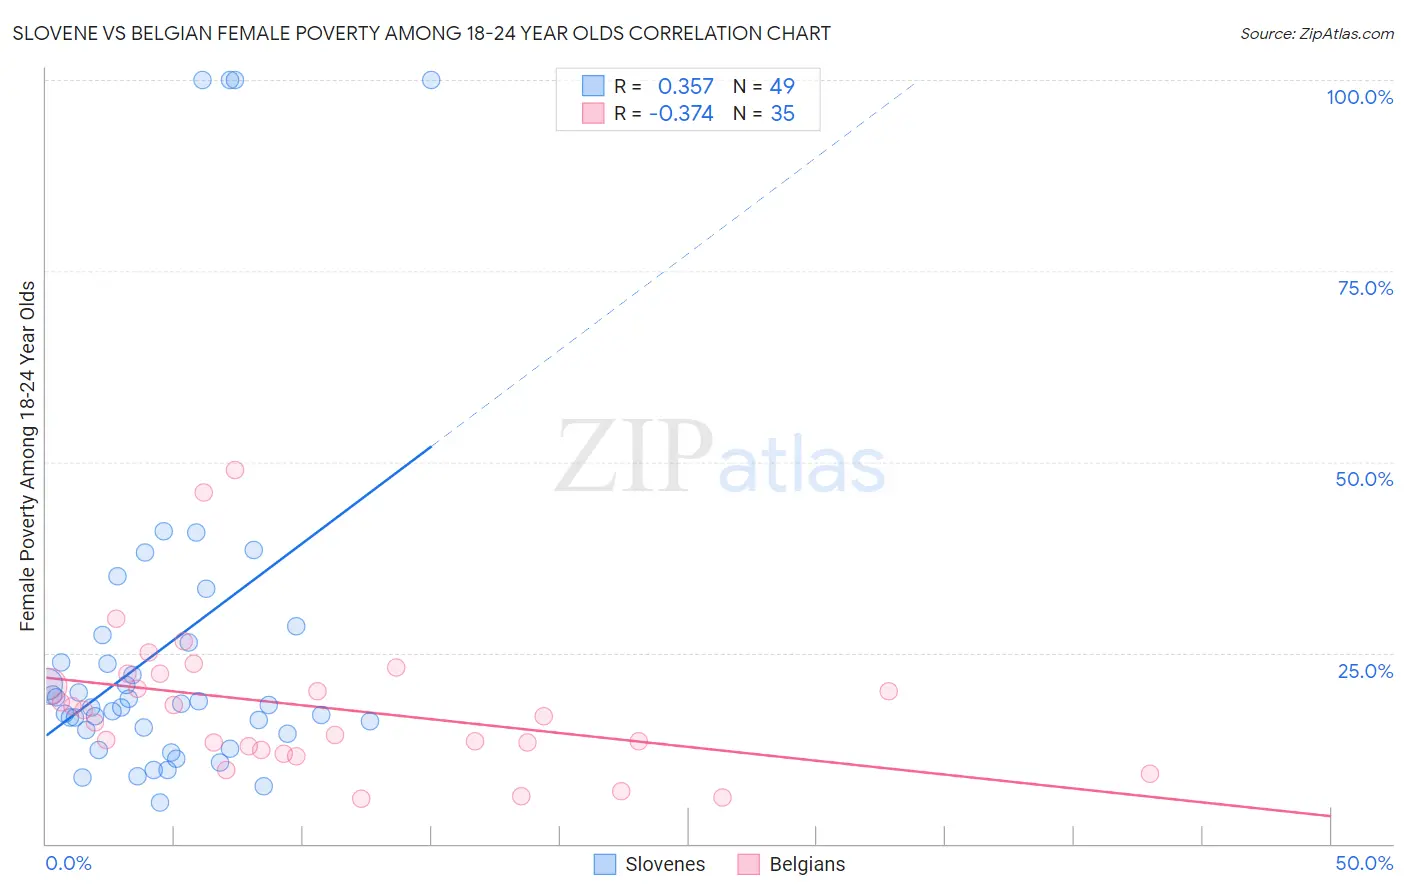 Slovene vs Belgian Female Poverty Among 18-24 Year Olds